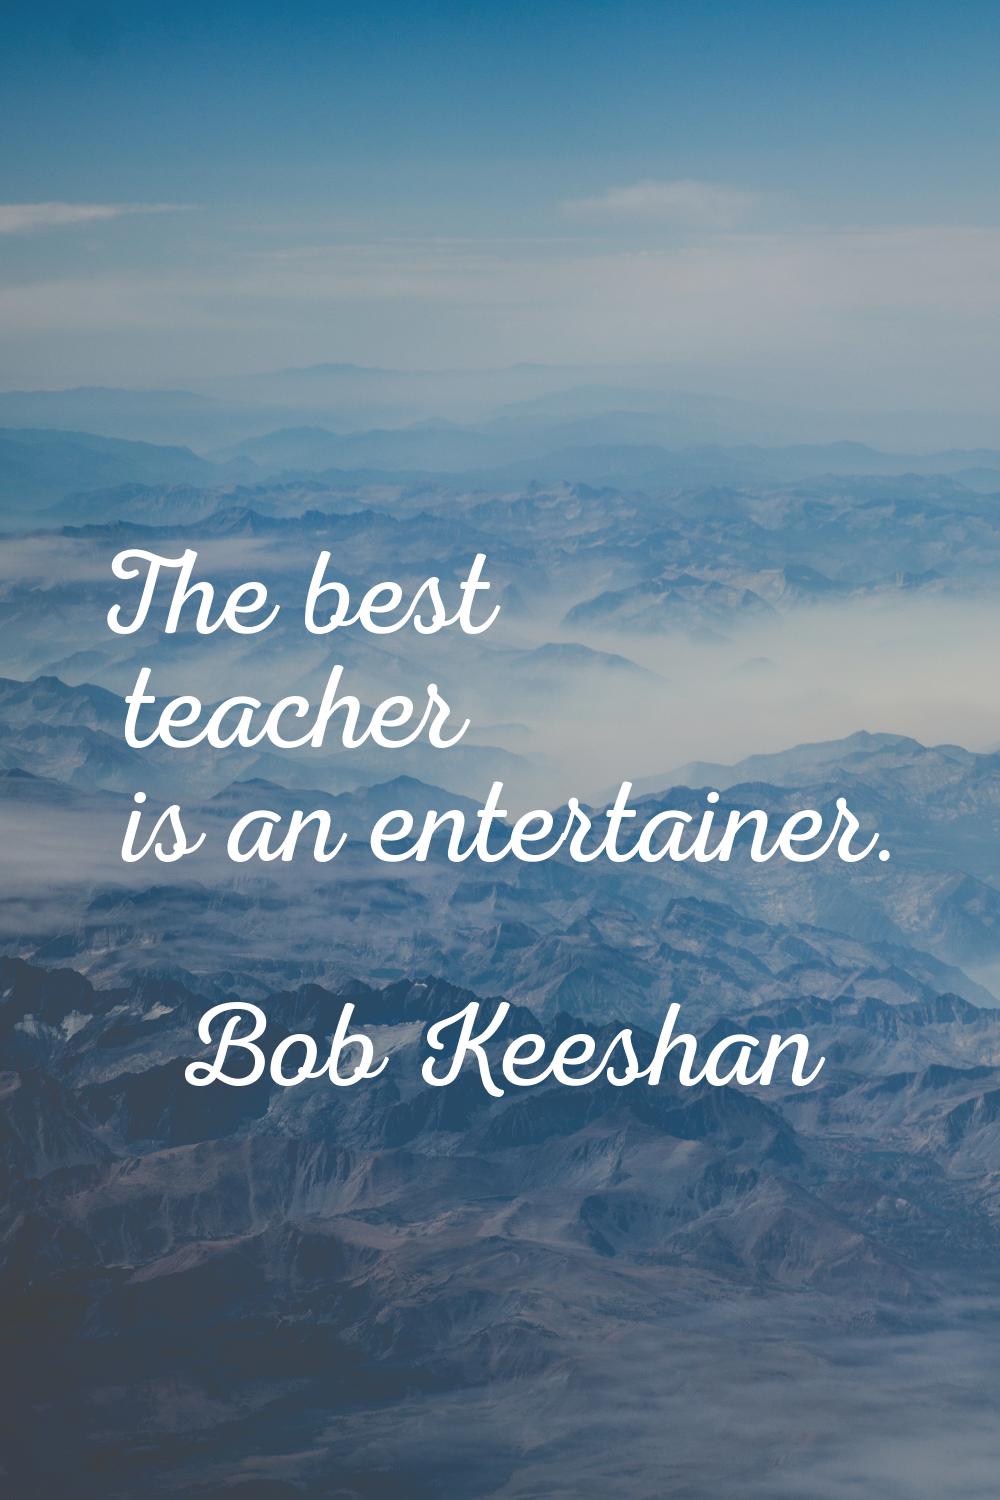 The best teacher is an entertainer.